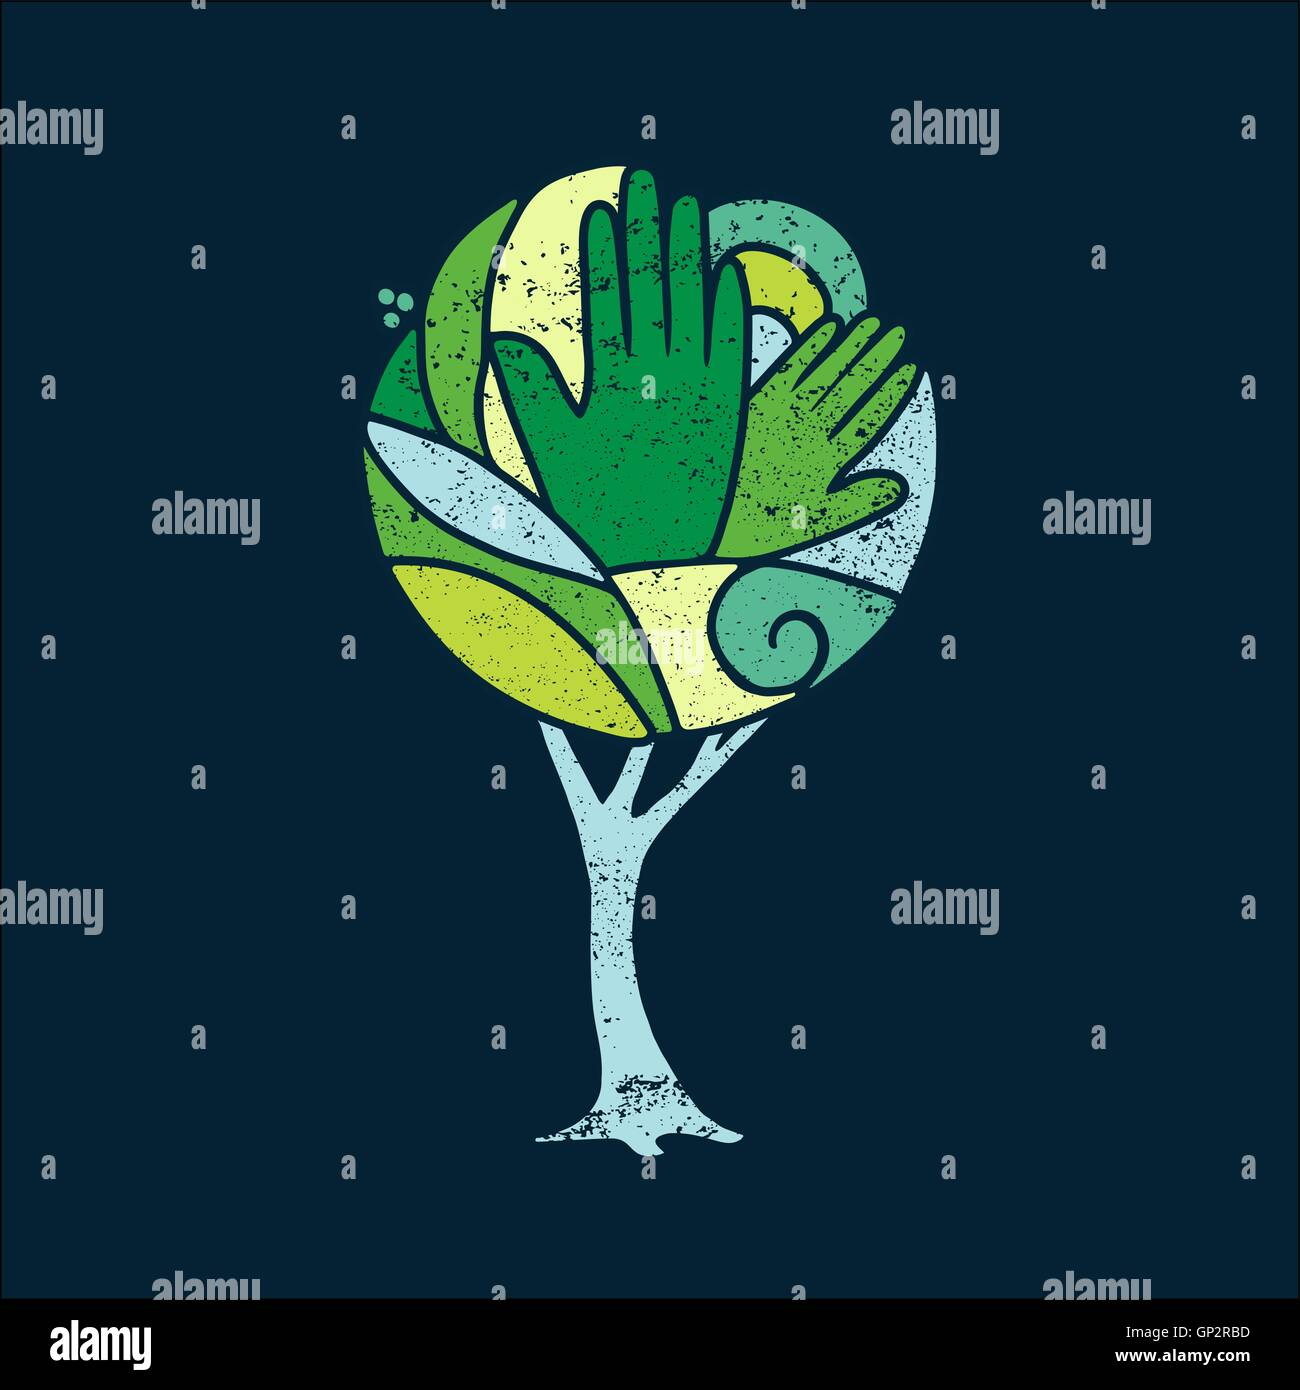 Bunter Baum Konzeptkunst mit grüne Hände und Natur-Design für soziales Umfeld Hilfe. EPS10 Vektor. Stock Vektor